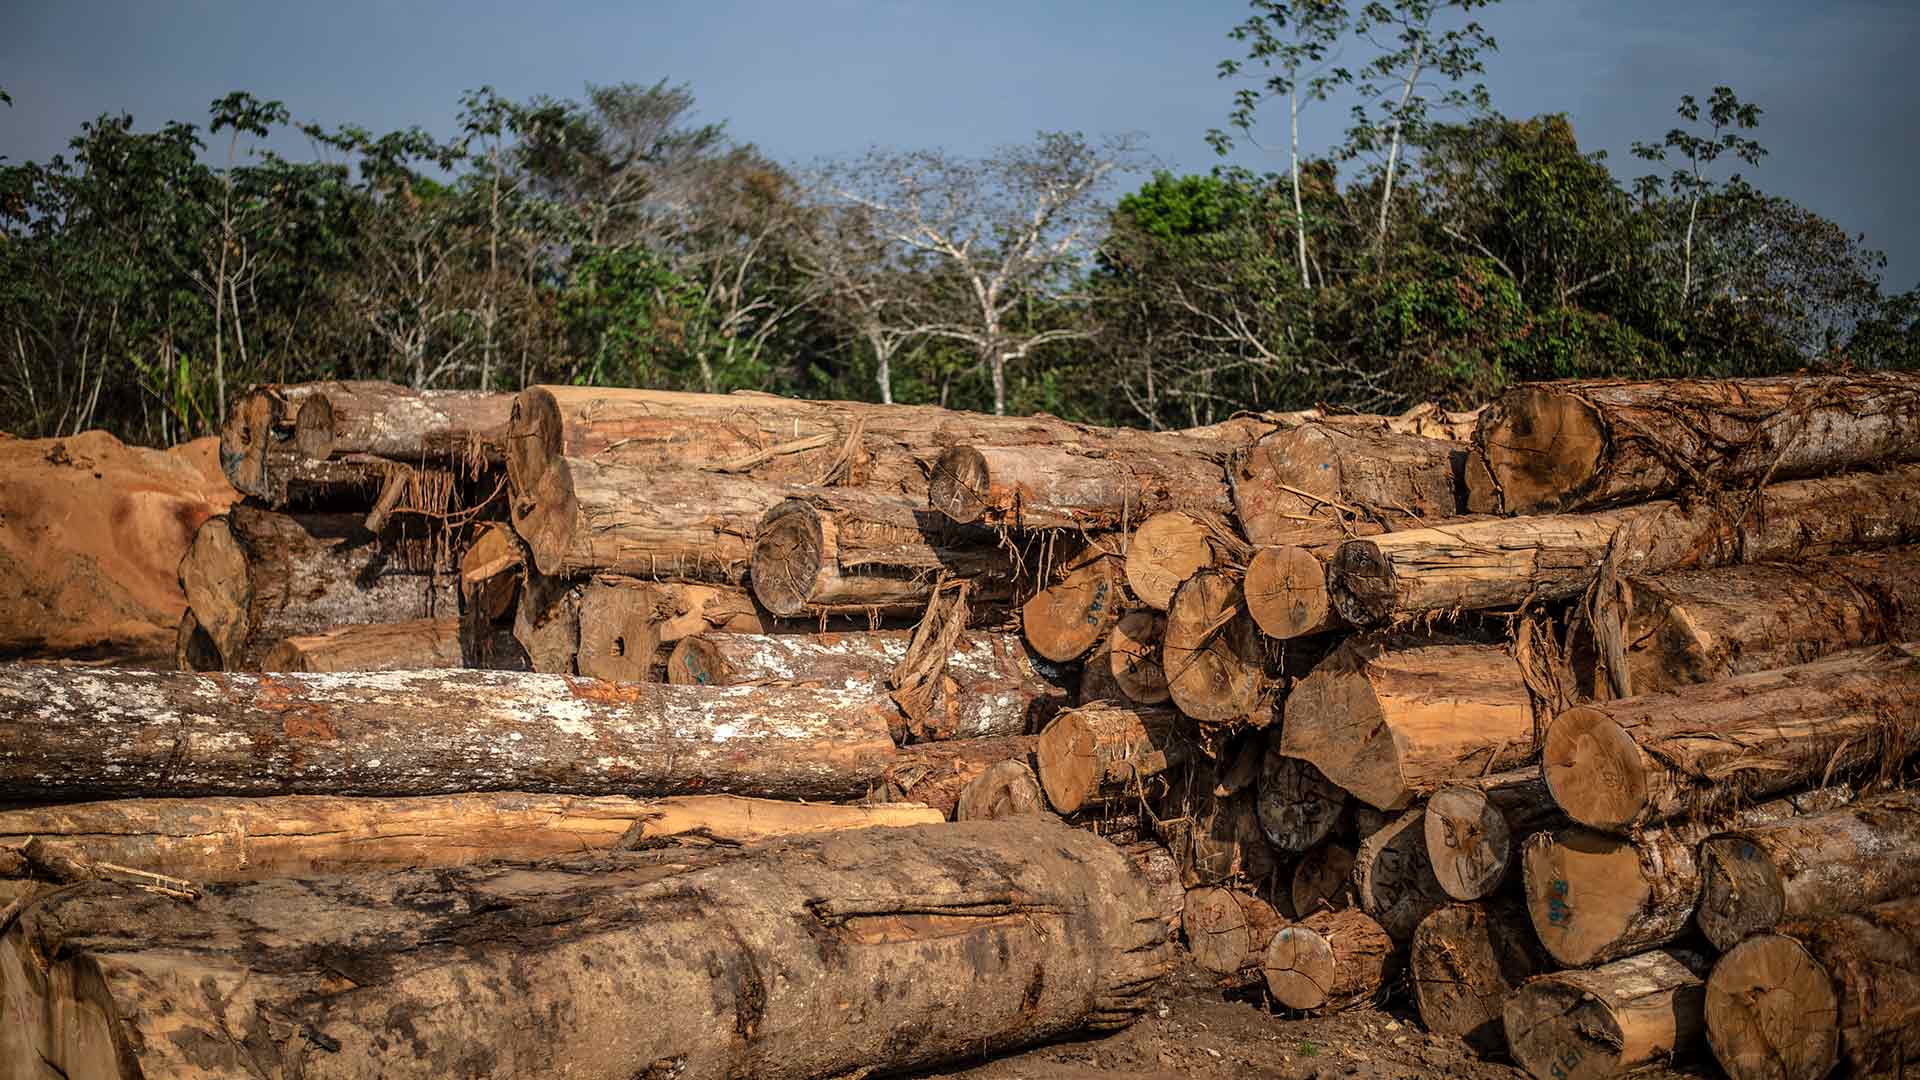 La deforestación del Amazonas es impulsada por redes criminales, según un informe